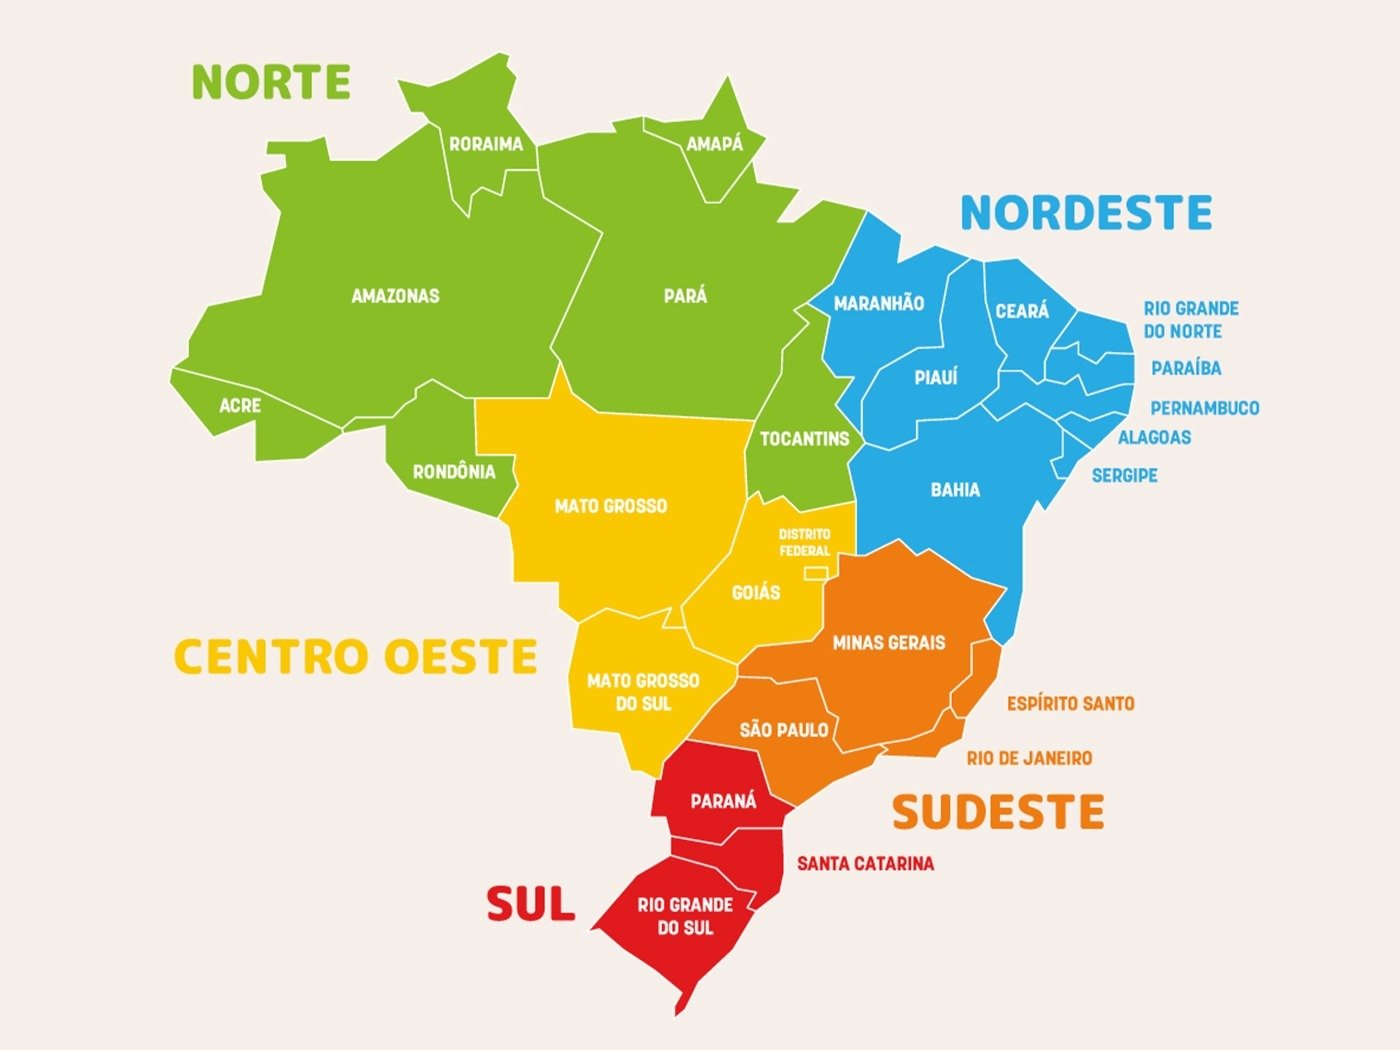 https://static.todamateria.com.br/upload/re/gi/regioes-brasileiras-og.jpg